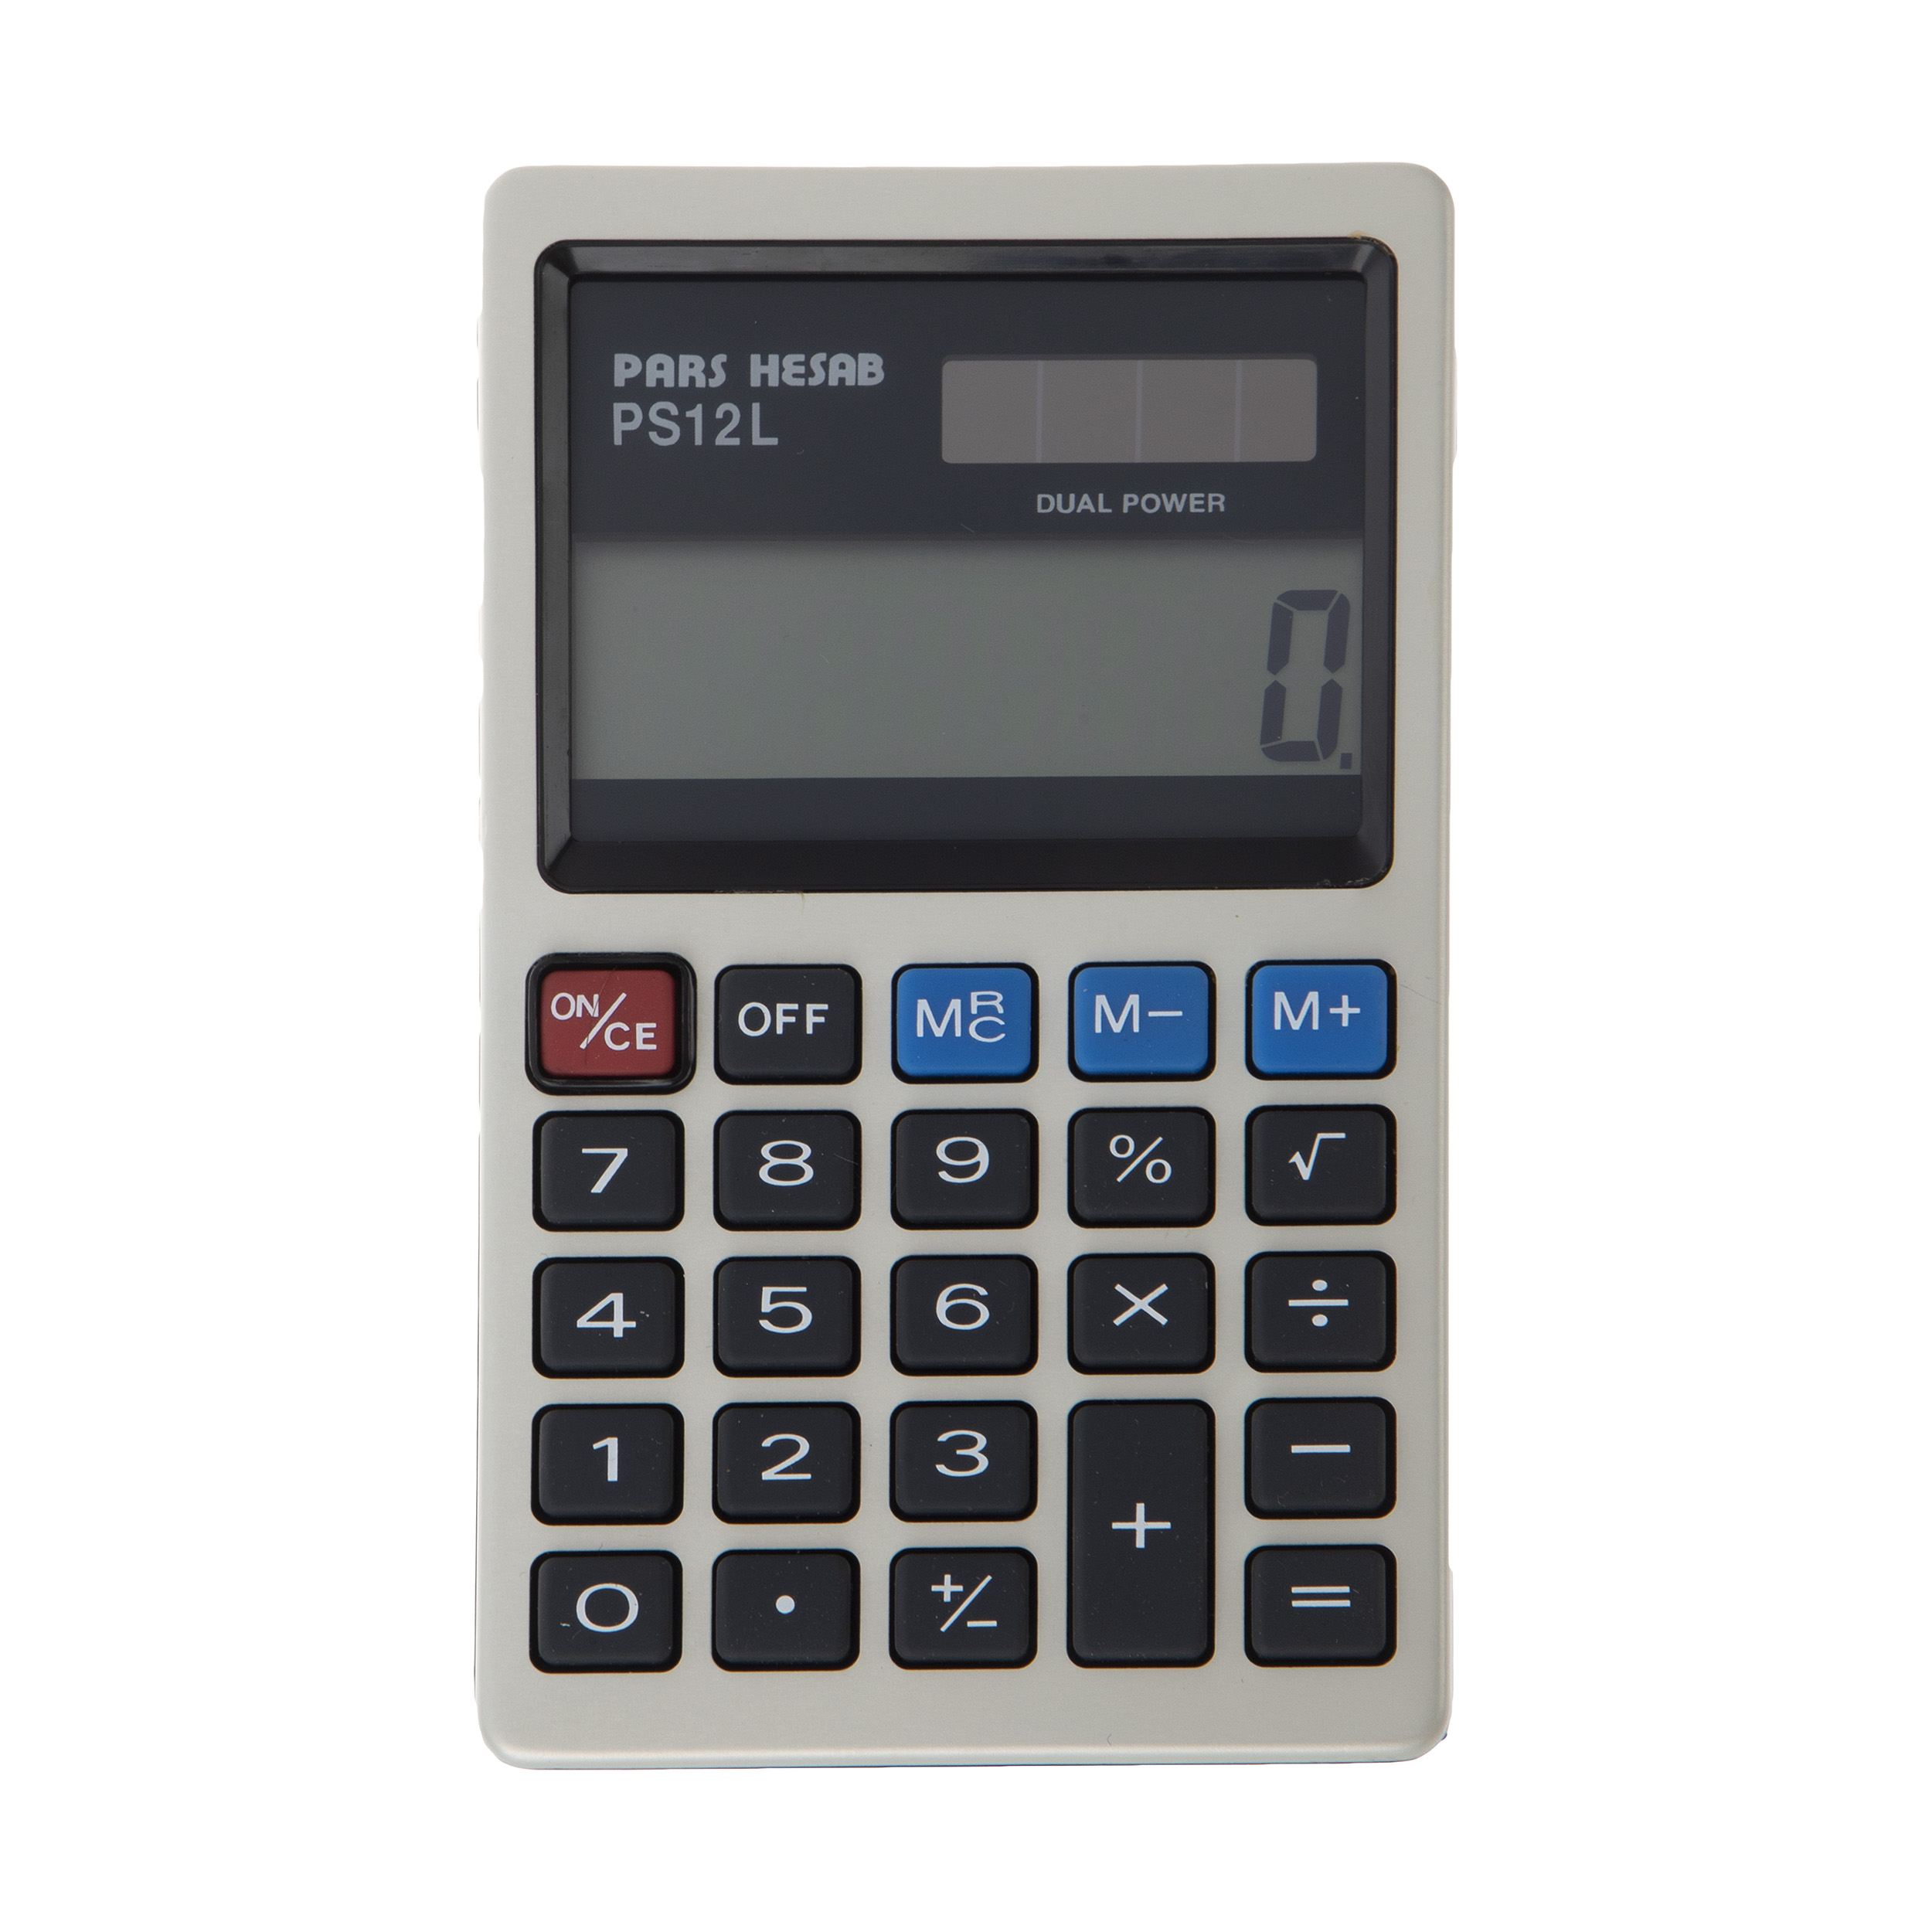 ماشین حساب پارس حساب مدل PS-12L